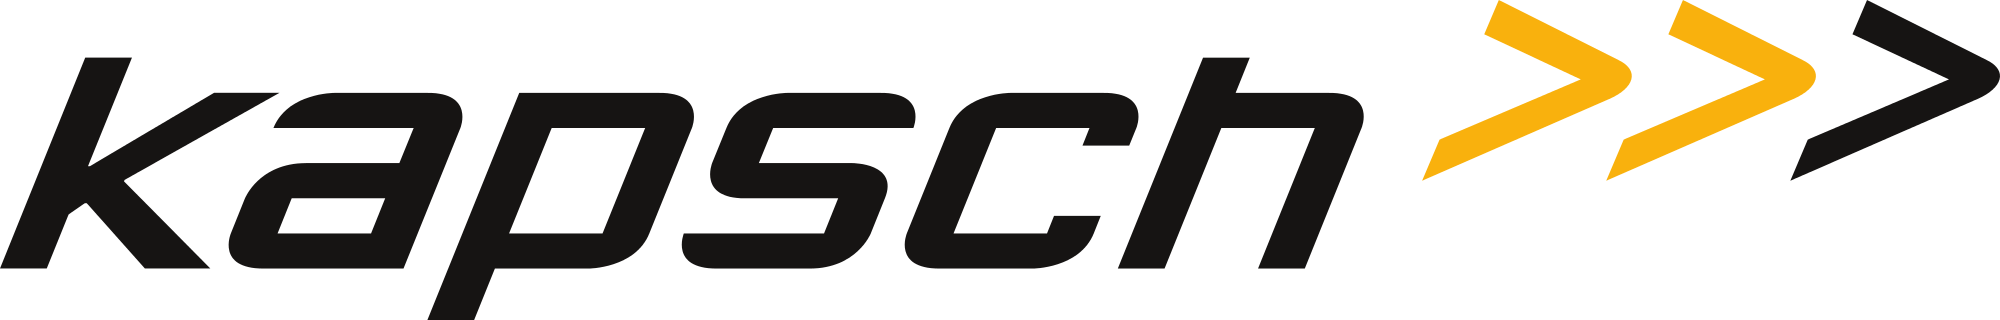 Logo_Kapsch